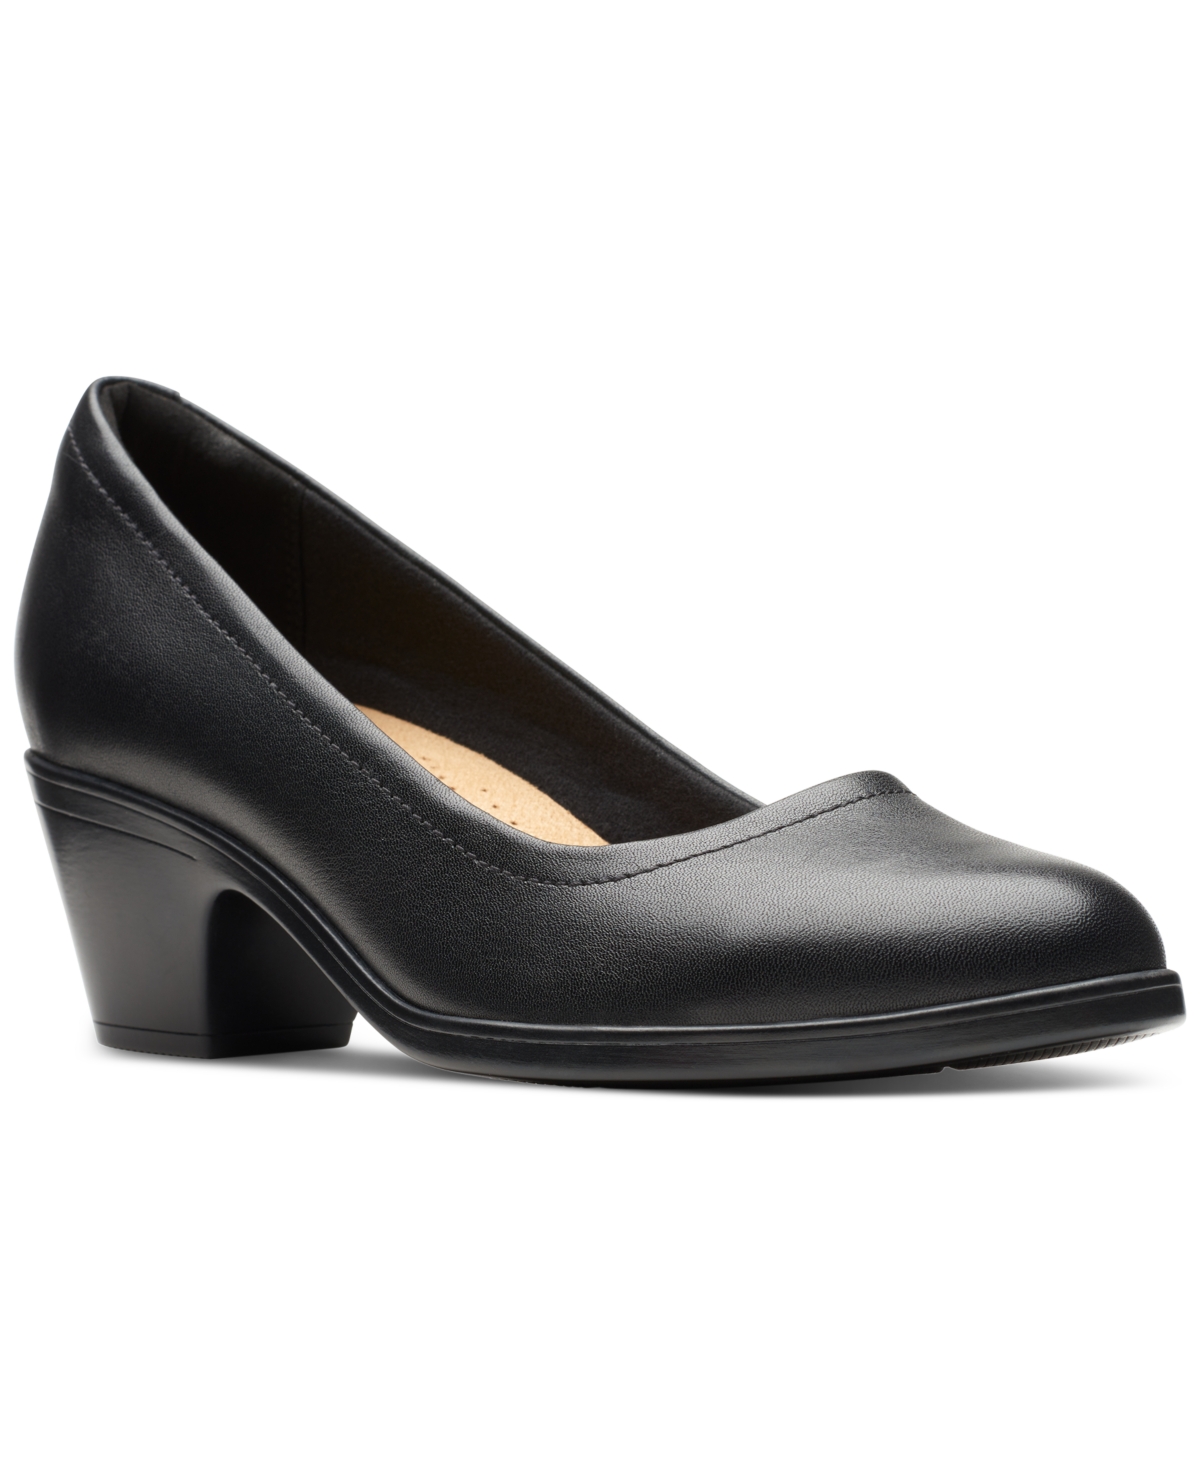 Clarks Women's Teresa Step Block-heel Comfort Pumps Women's Shoes In Navy Leather